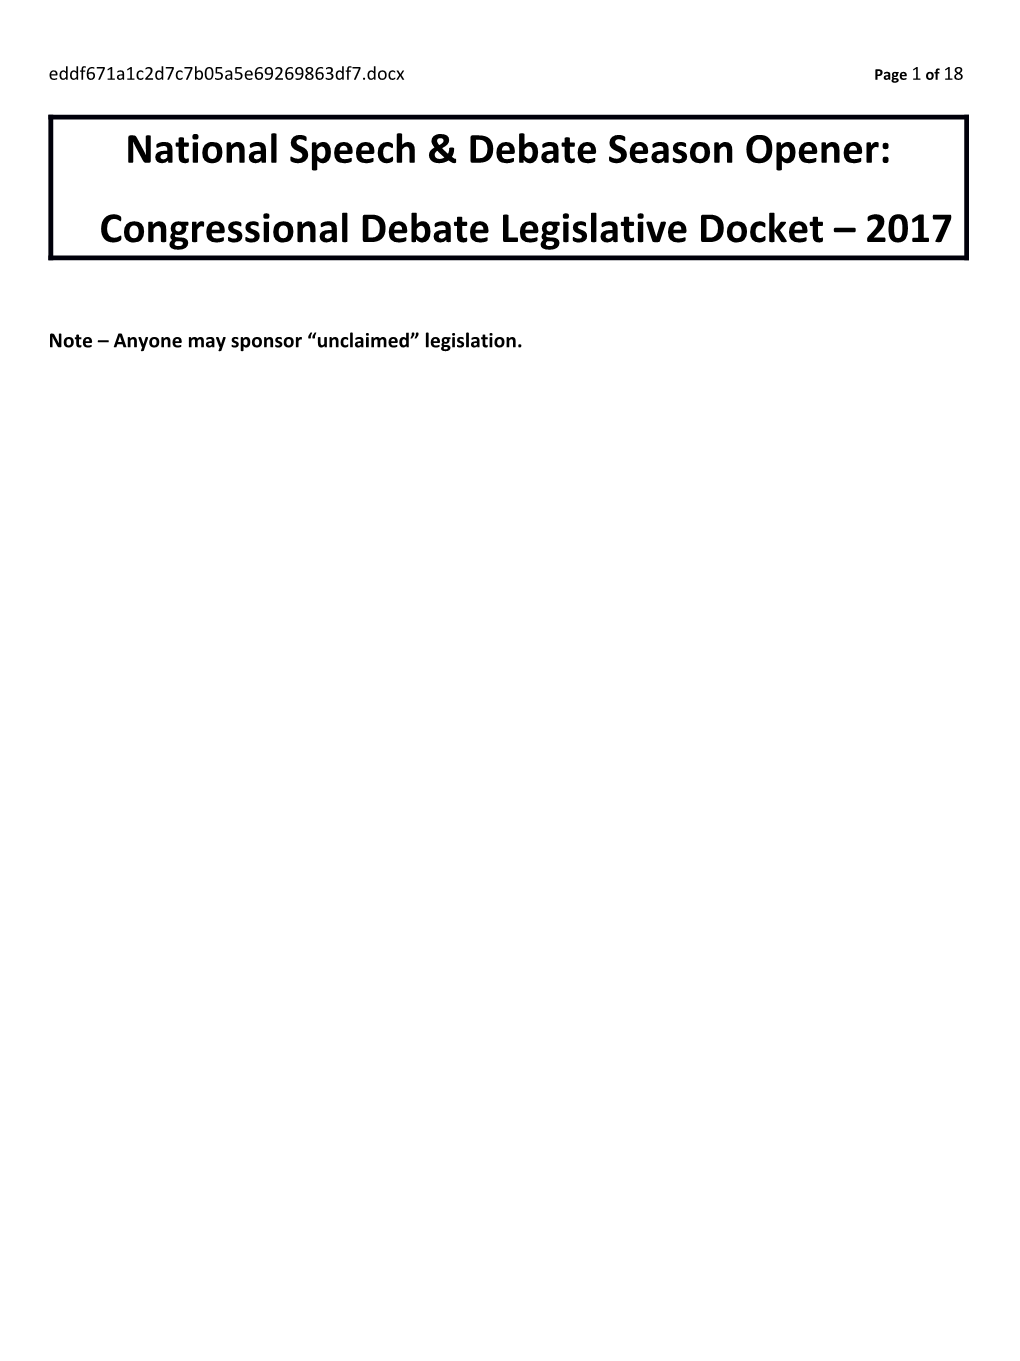 Legislative Docket - UK Season Opener - 8-25-17Page 1 of 17